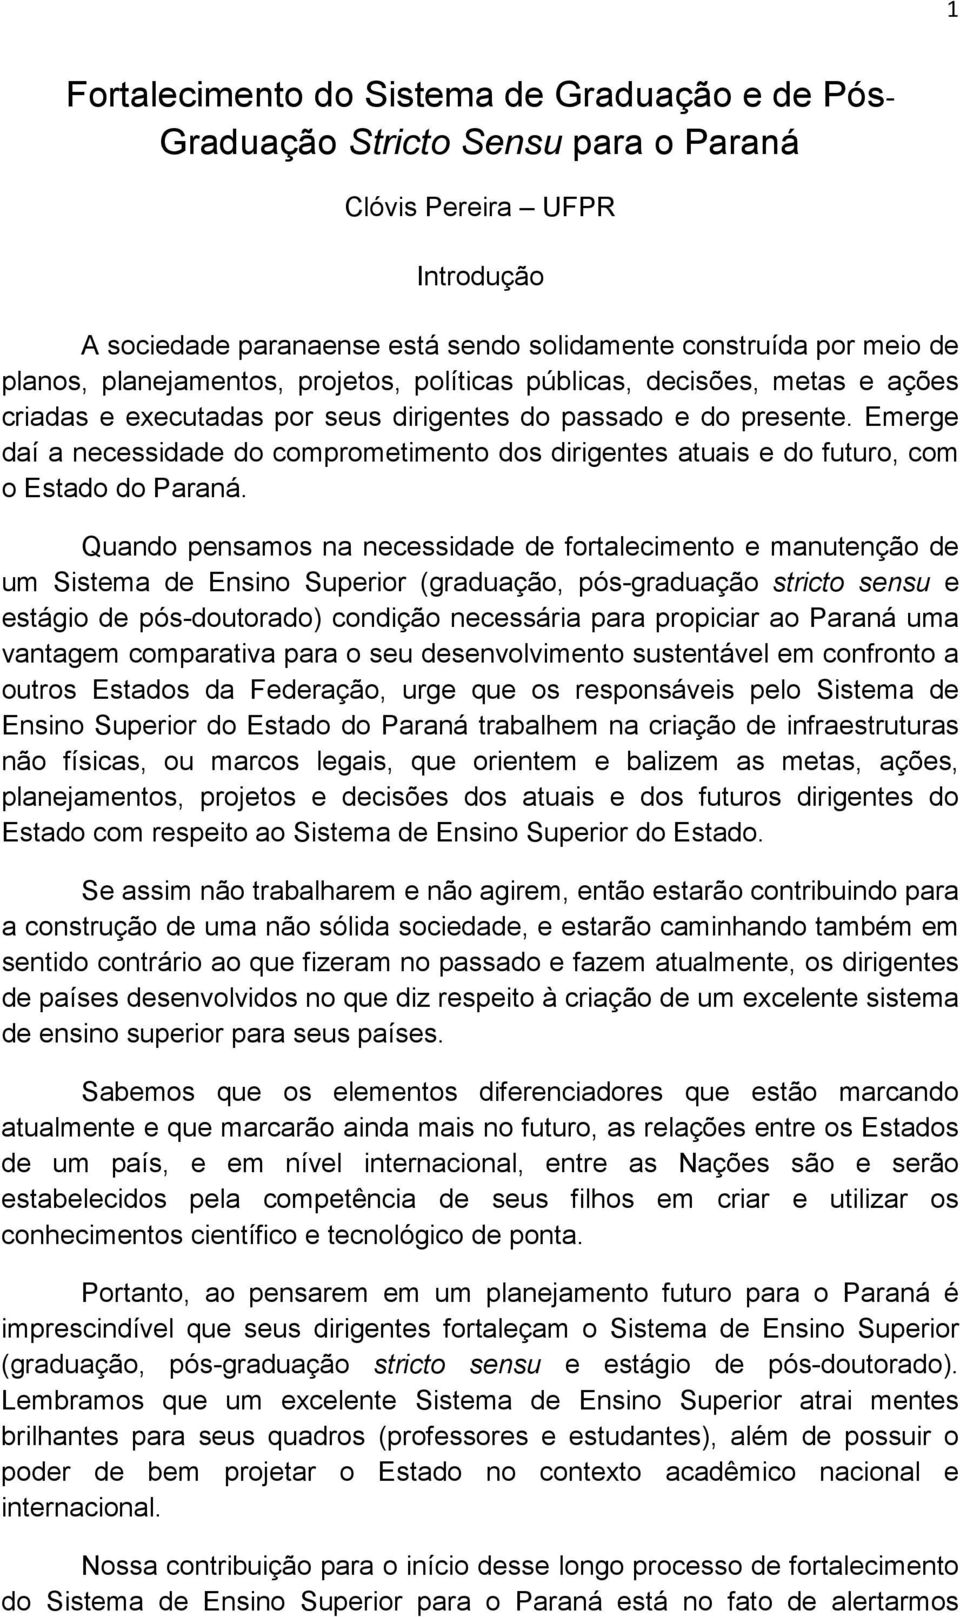 Emerge daí a necessidade do comprometimento dos dirigentes atuais e do futuro, com o Estado do Paraná.